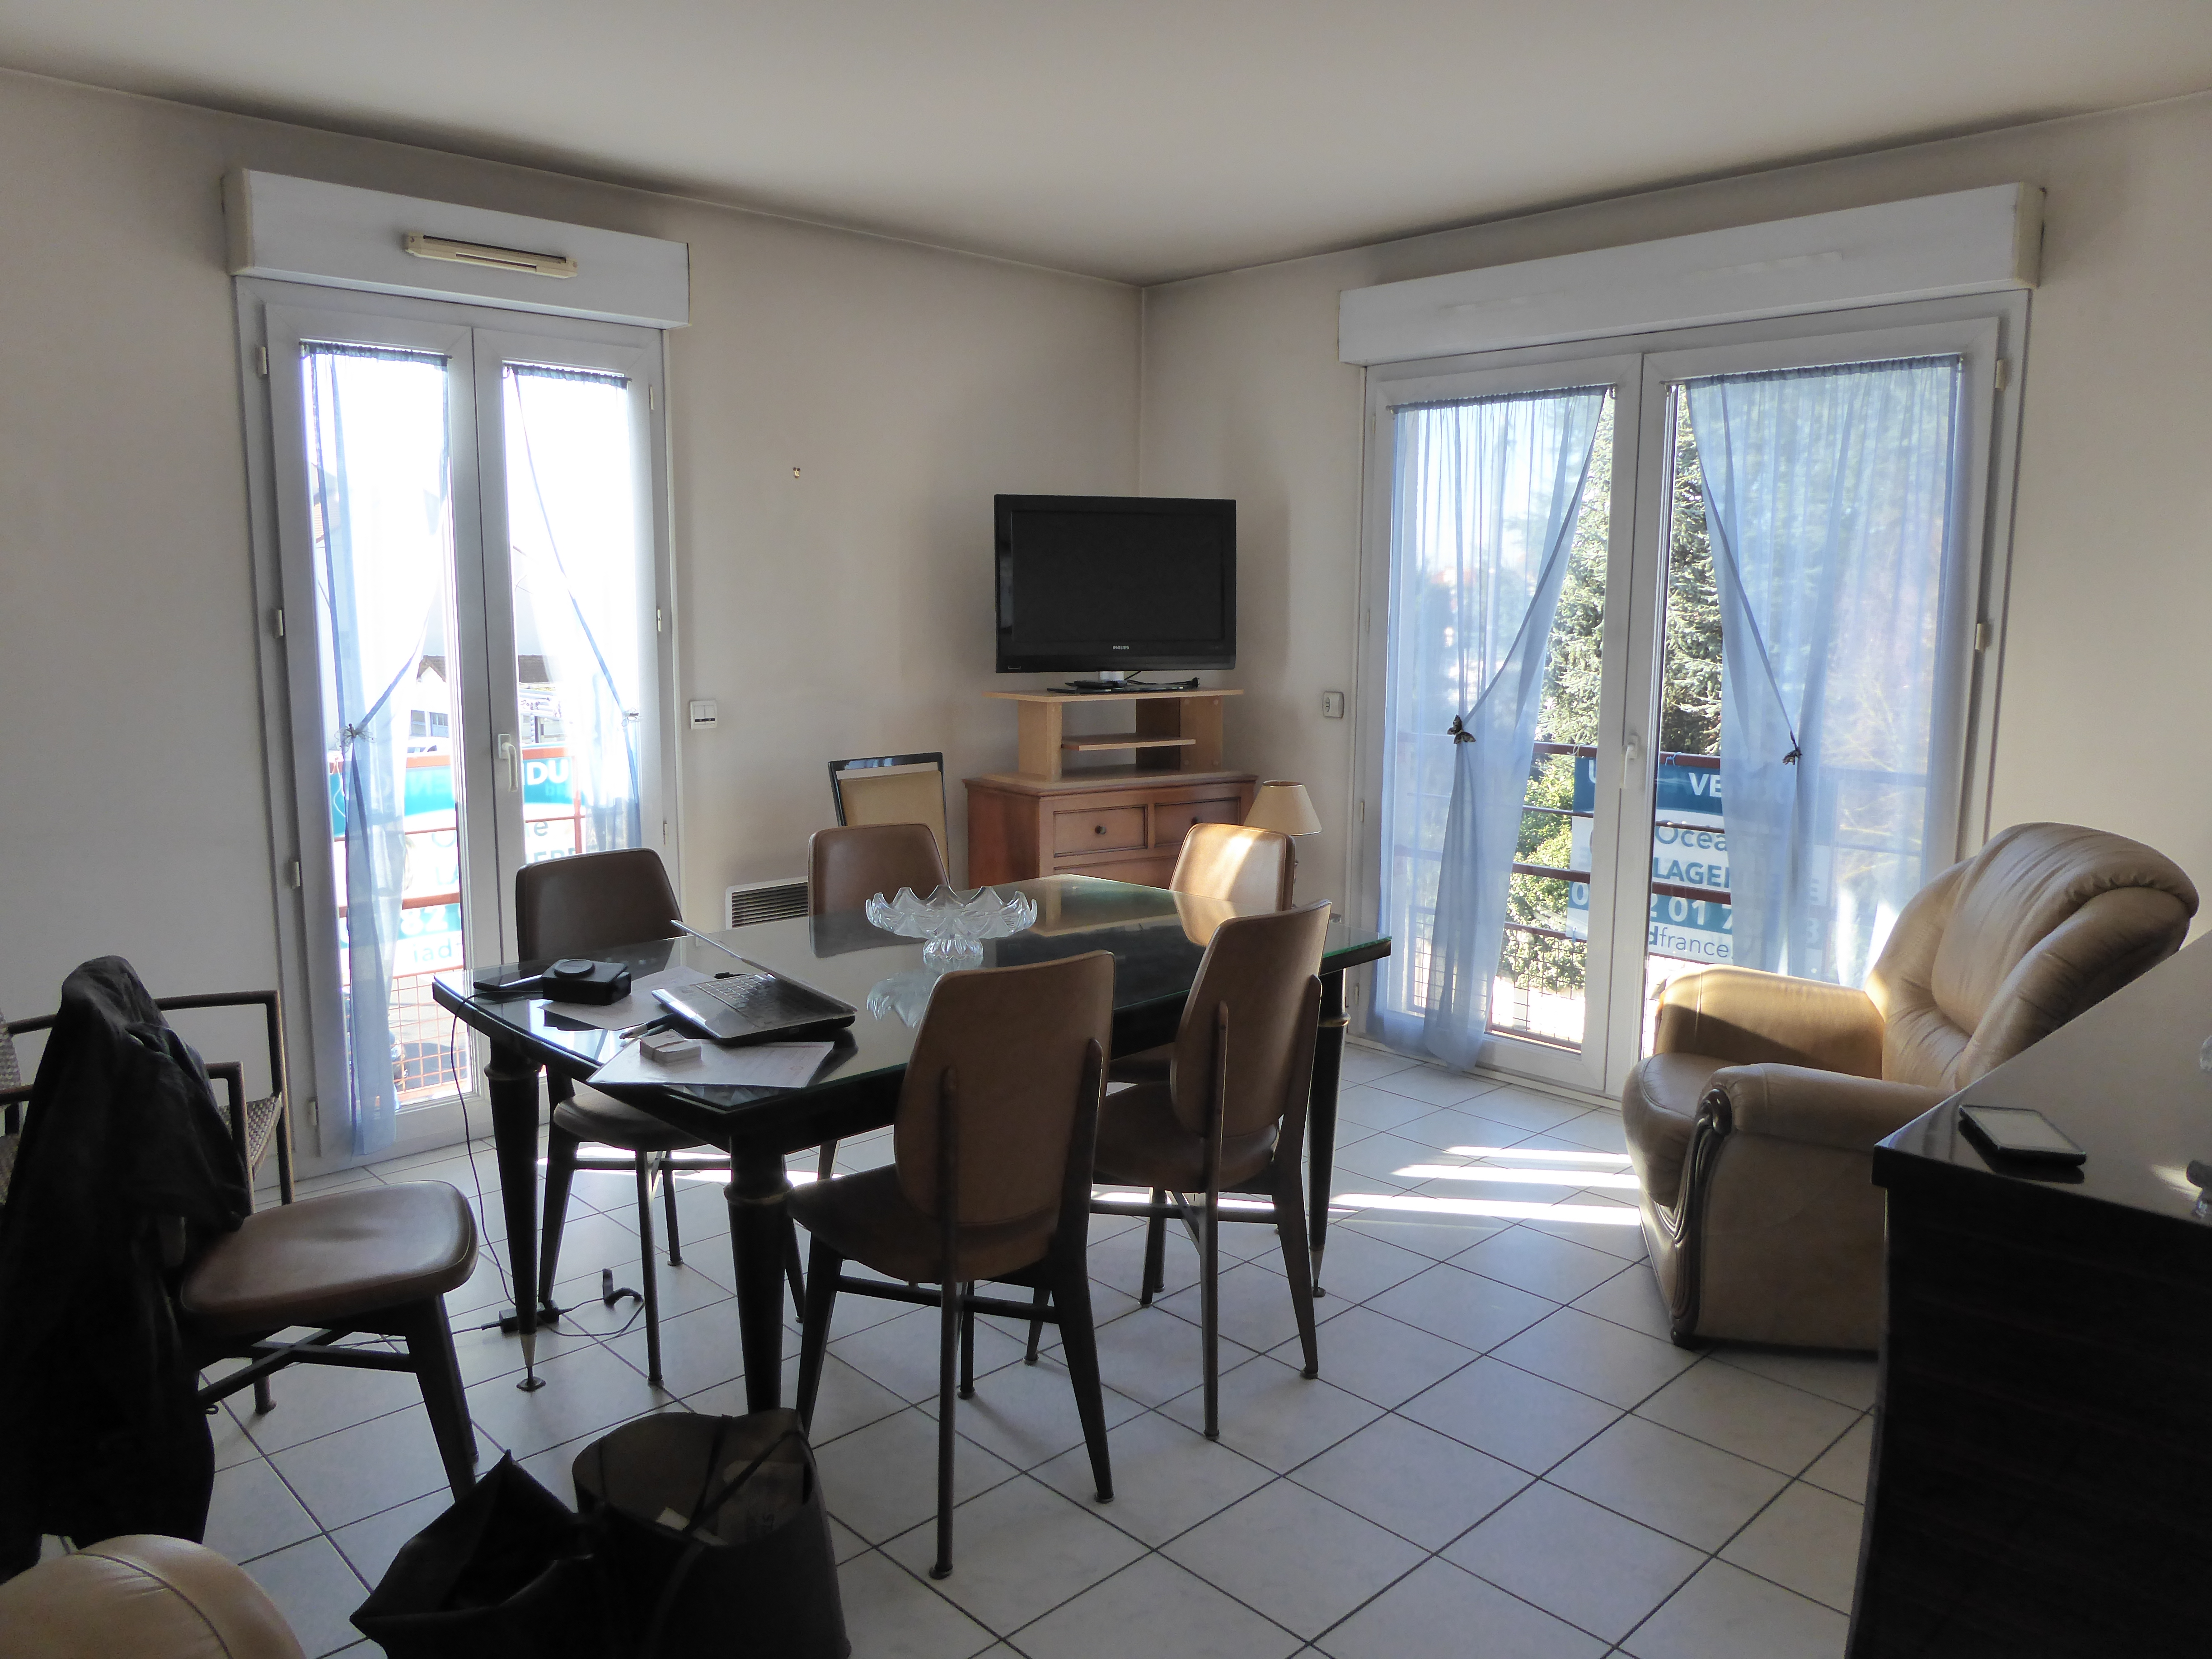 Appartement meublé à Savigny sur orge , avant home staging